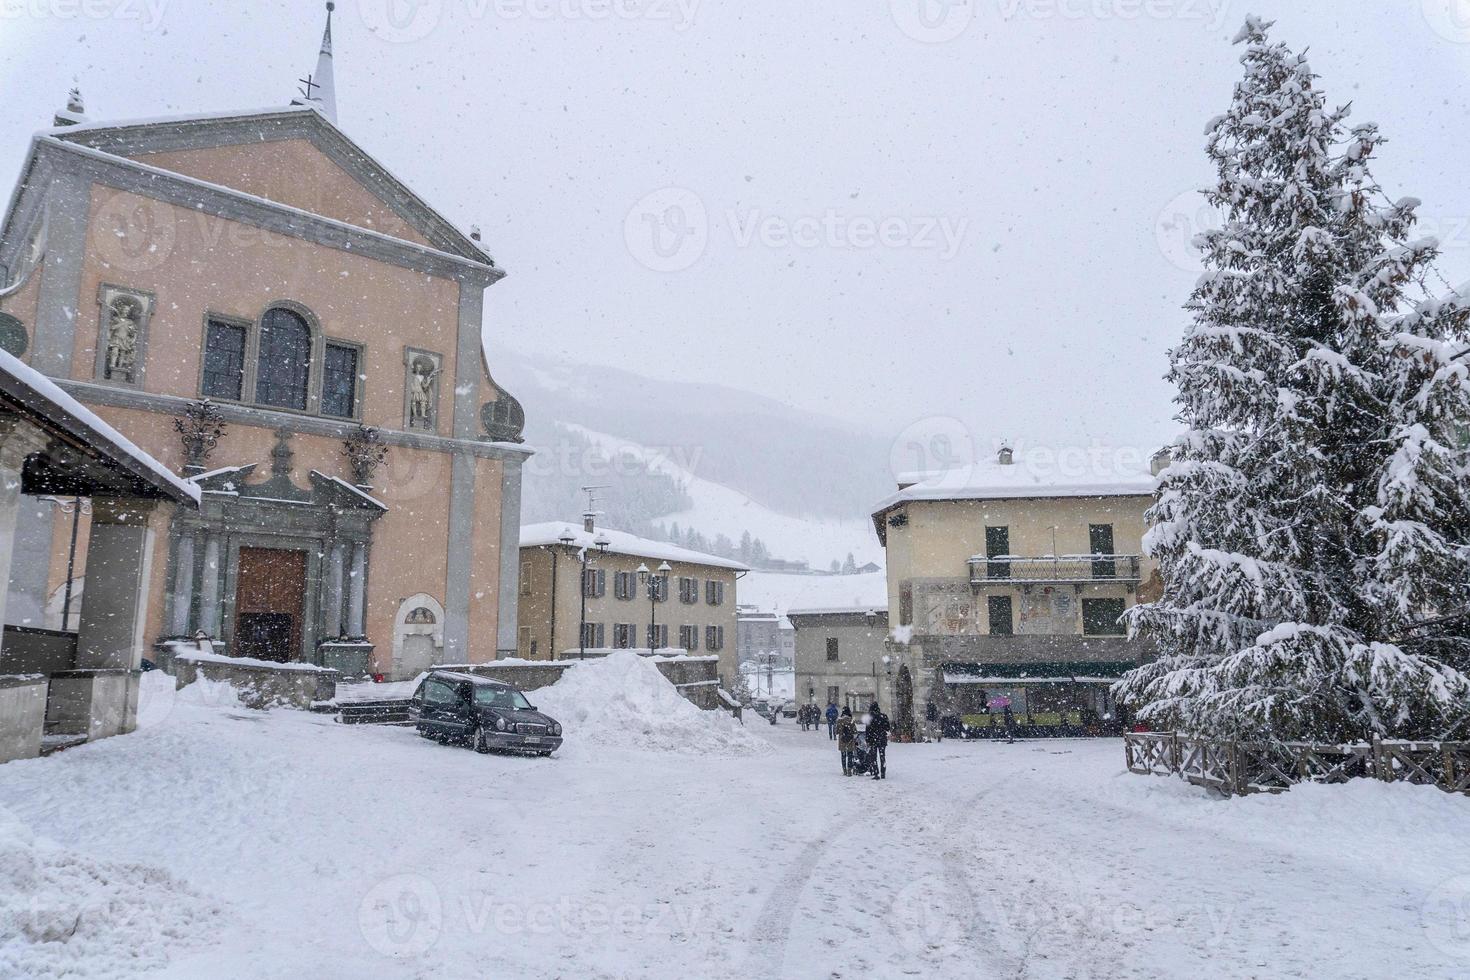 bormio medeltida by valtellina Italien under de snö i vinter- foto